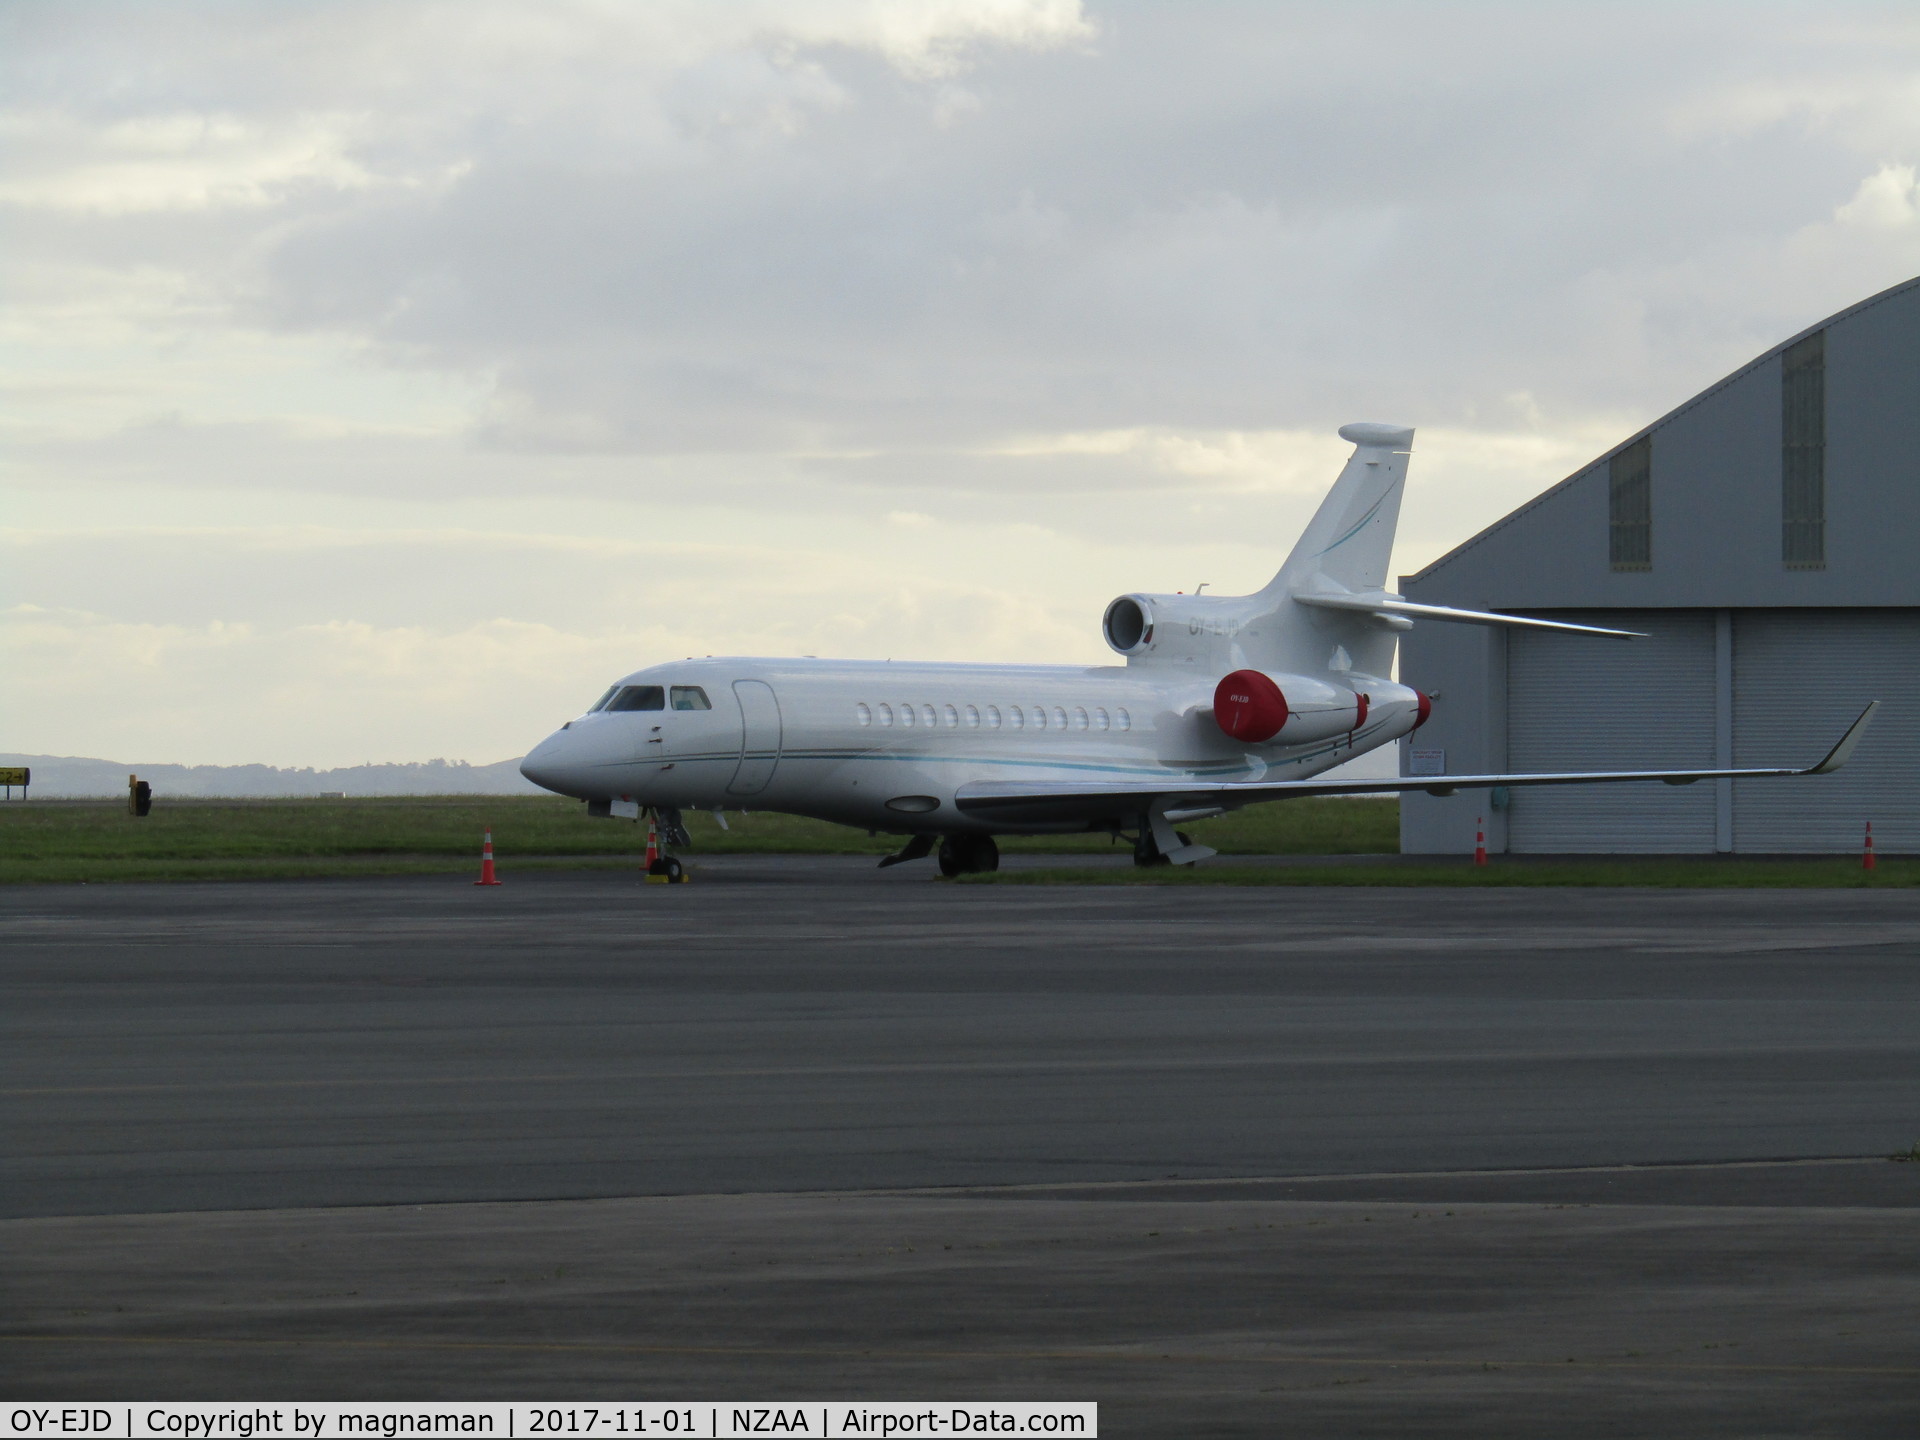 OY-EJD, 2005 Dassault Falcon 2000EX C/N 63, on convair apron